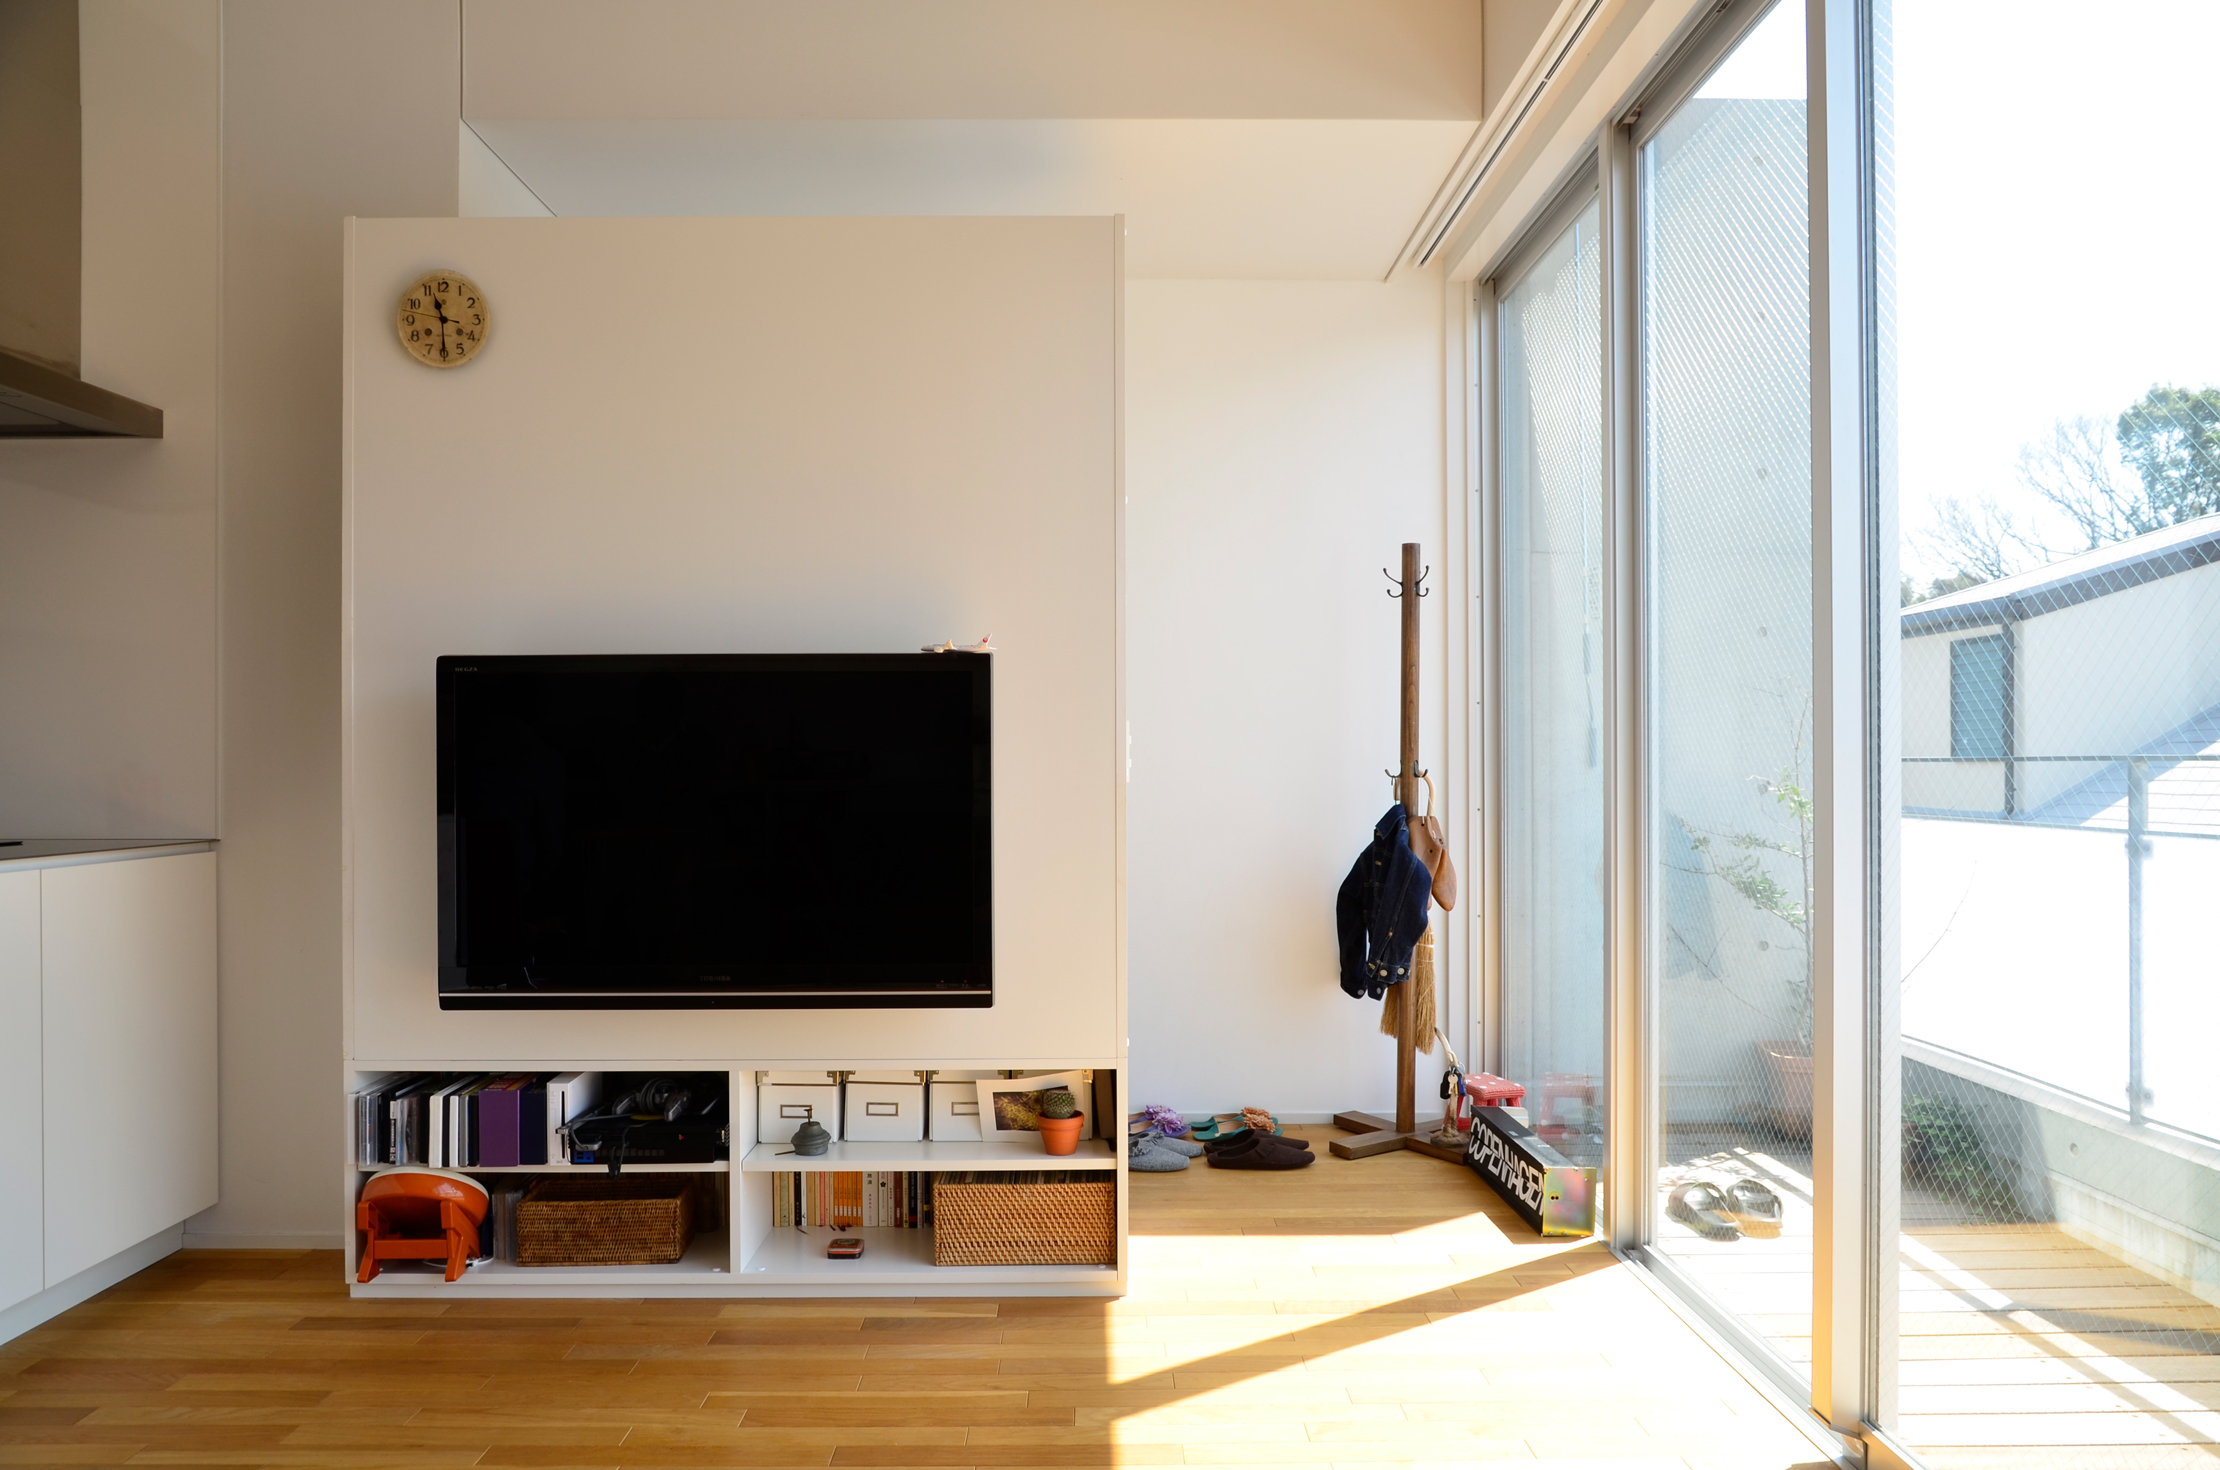 テレビの裏側が玄関。壁を天井まで建てず開放的な空間に